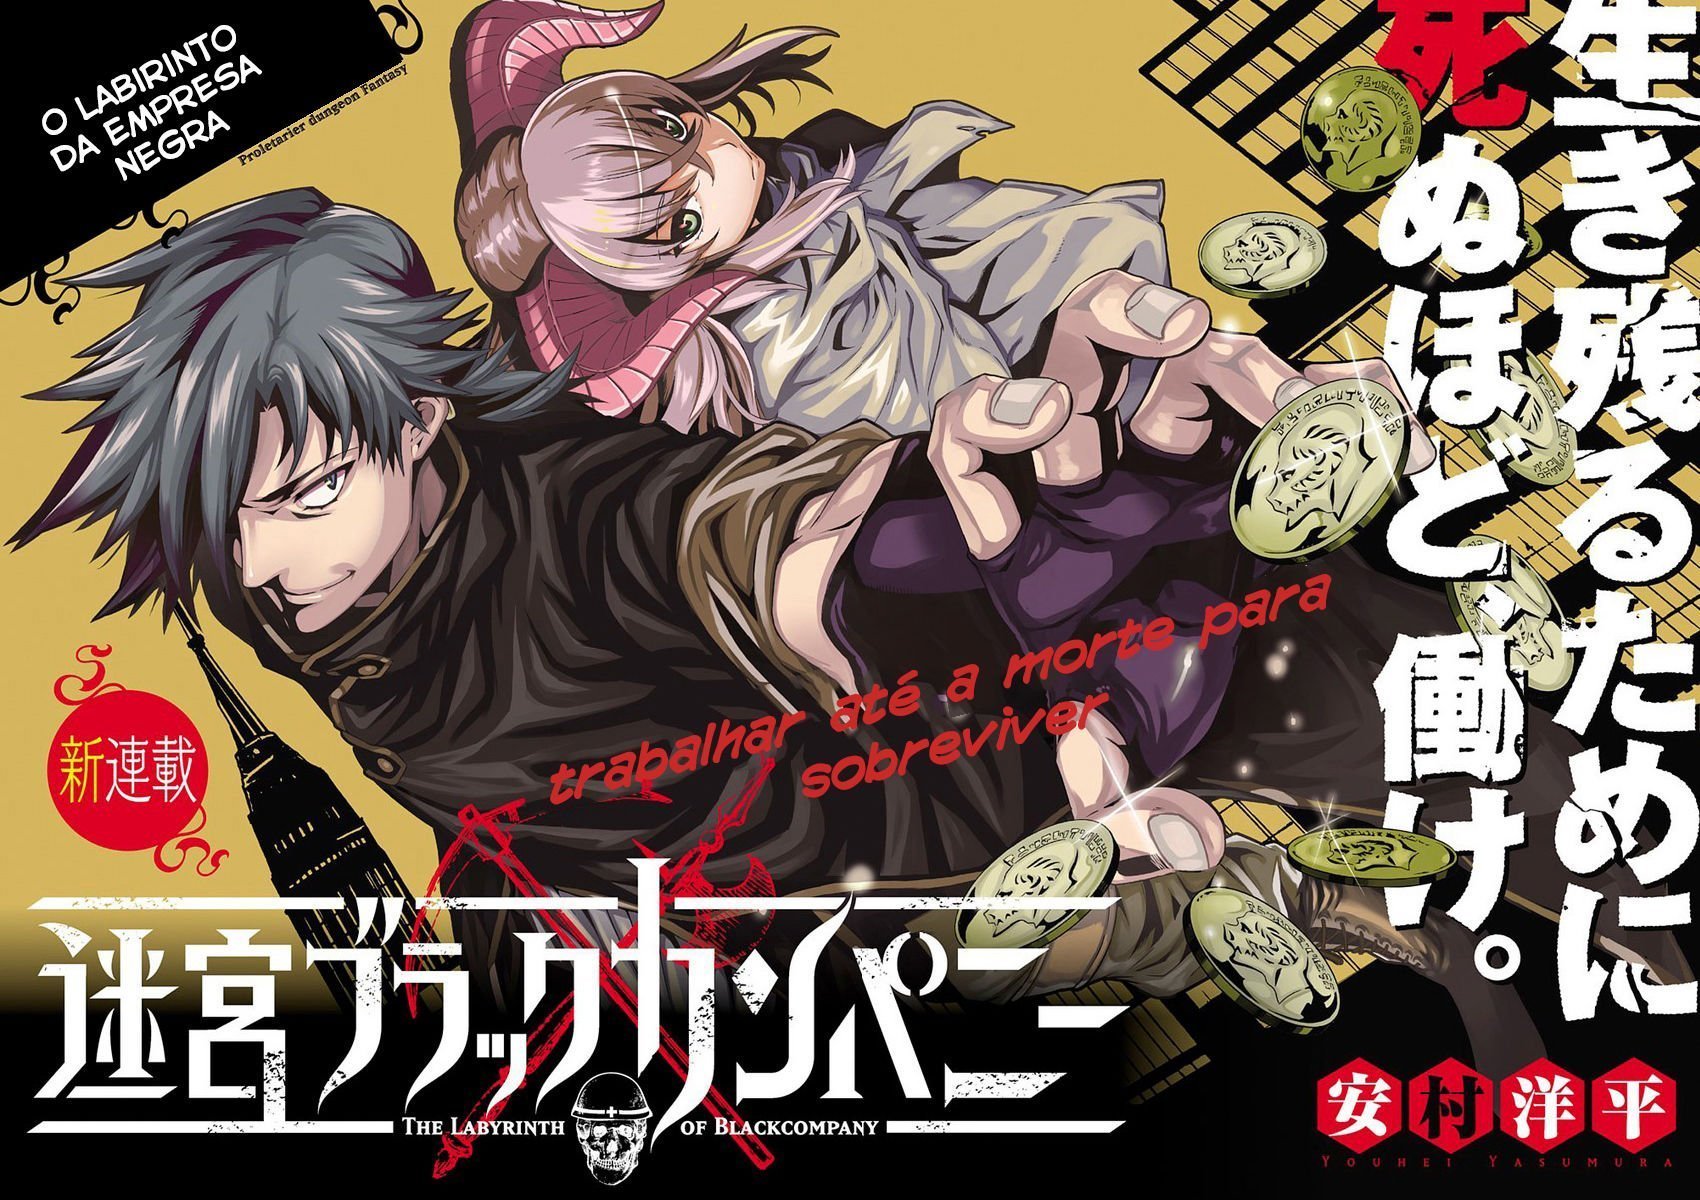 A distribuidora Rakuten listou o 6° volume de Meikyuu Black Company, com uma imagem a qual revela que a série está sendo adaptada para anime.